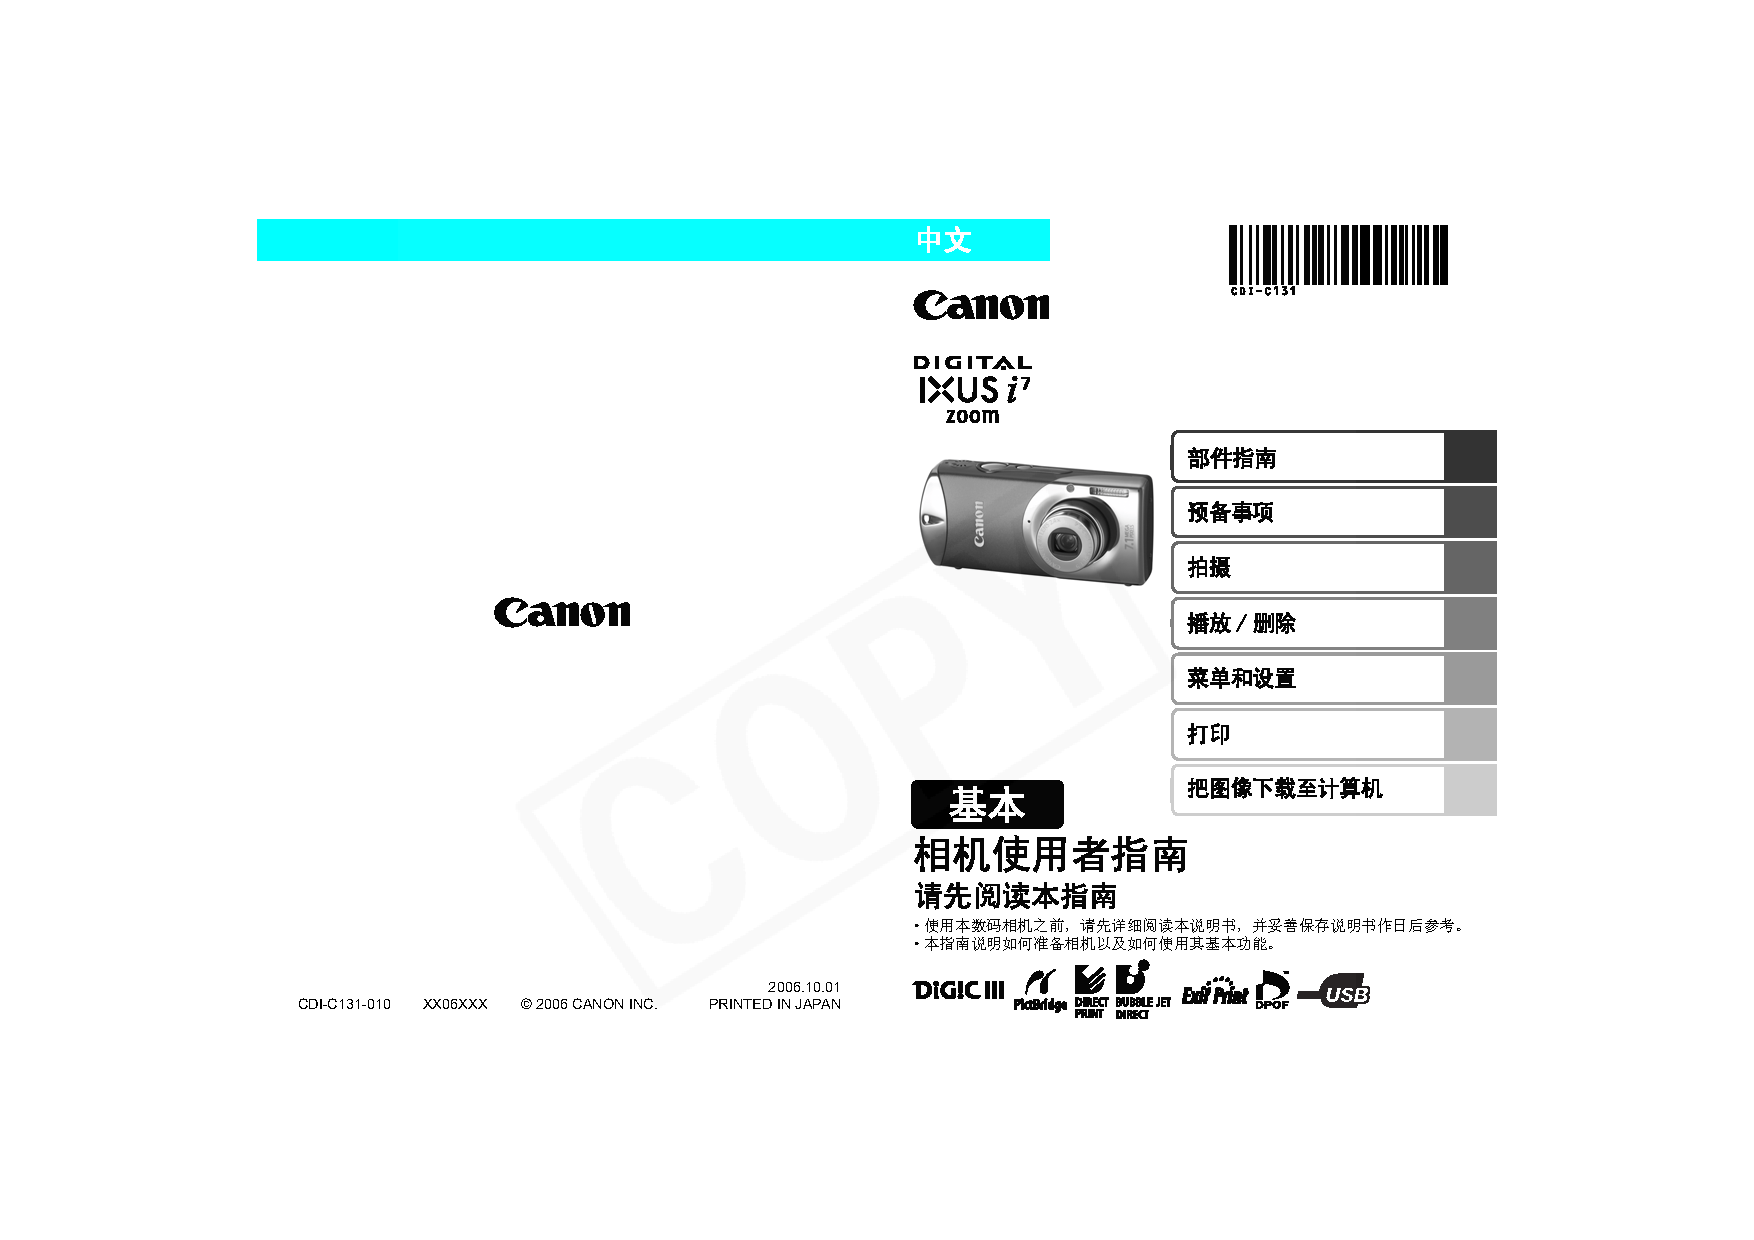 佳能 Canon IXUS i7 Zoom 基础使用指南 封面